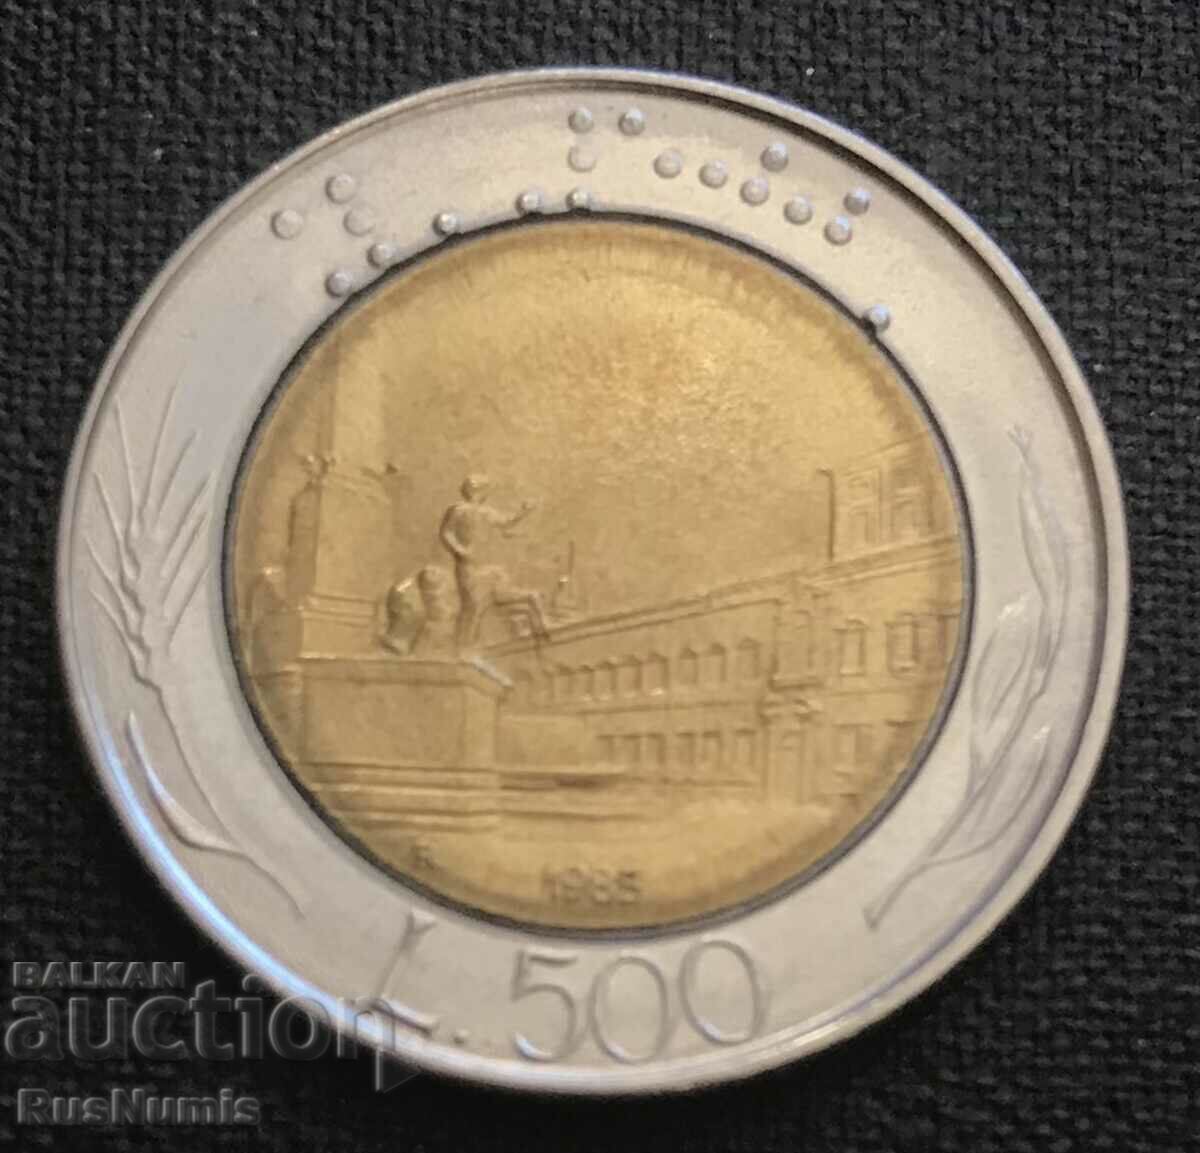 Italy.500 lire 1985.